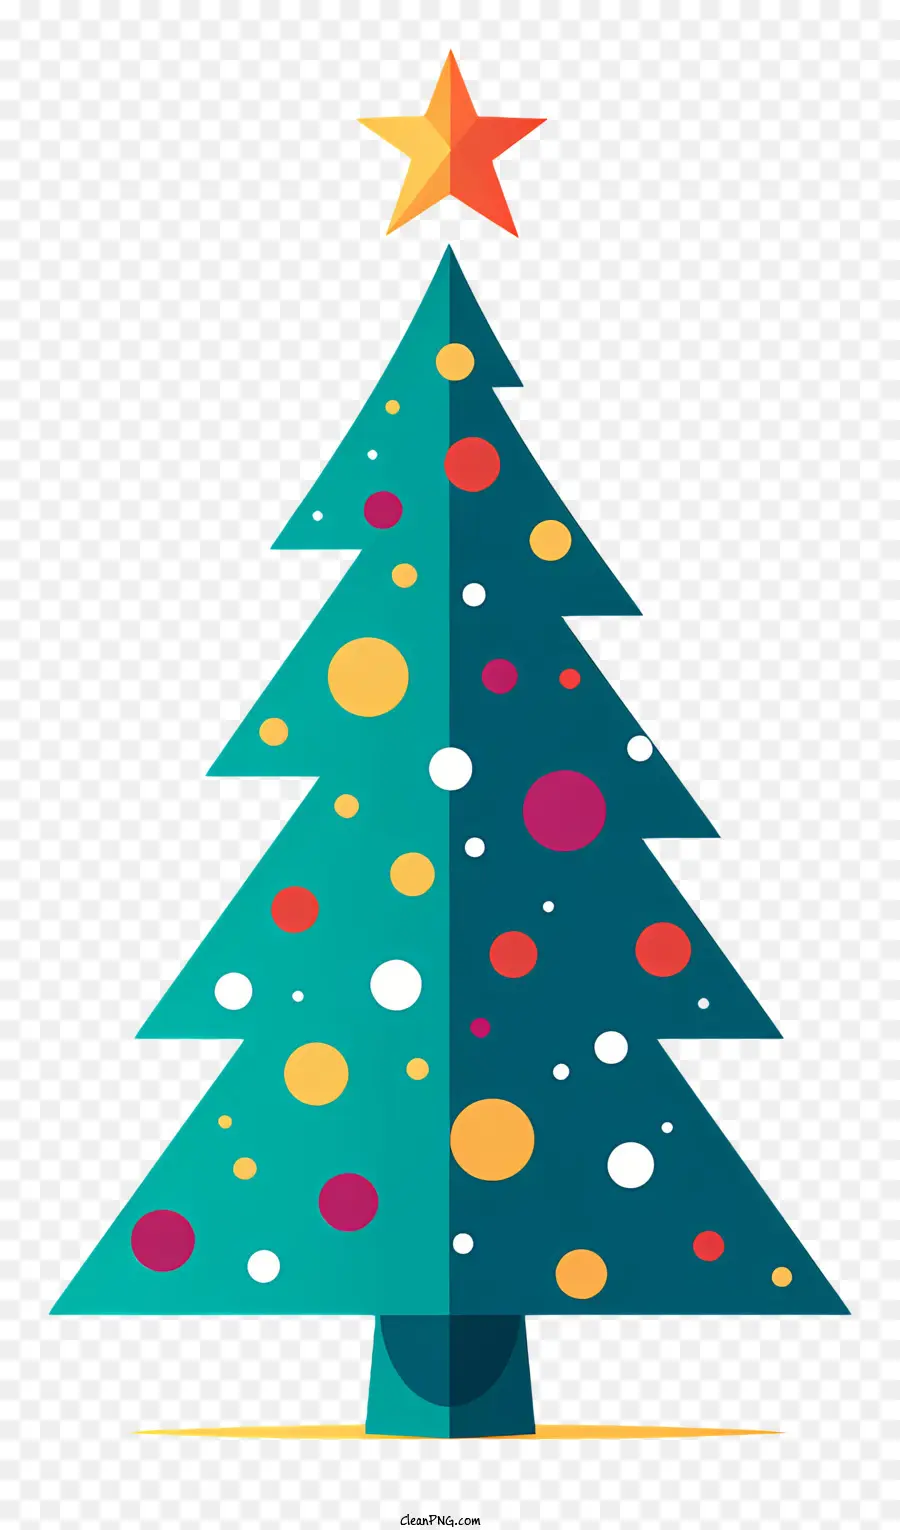 Weihnachtsbaum - Buntes Weihnachtsbaum mit Ornamenten und Glocken